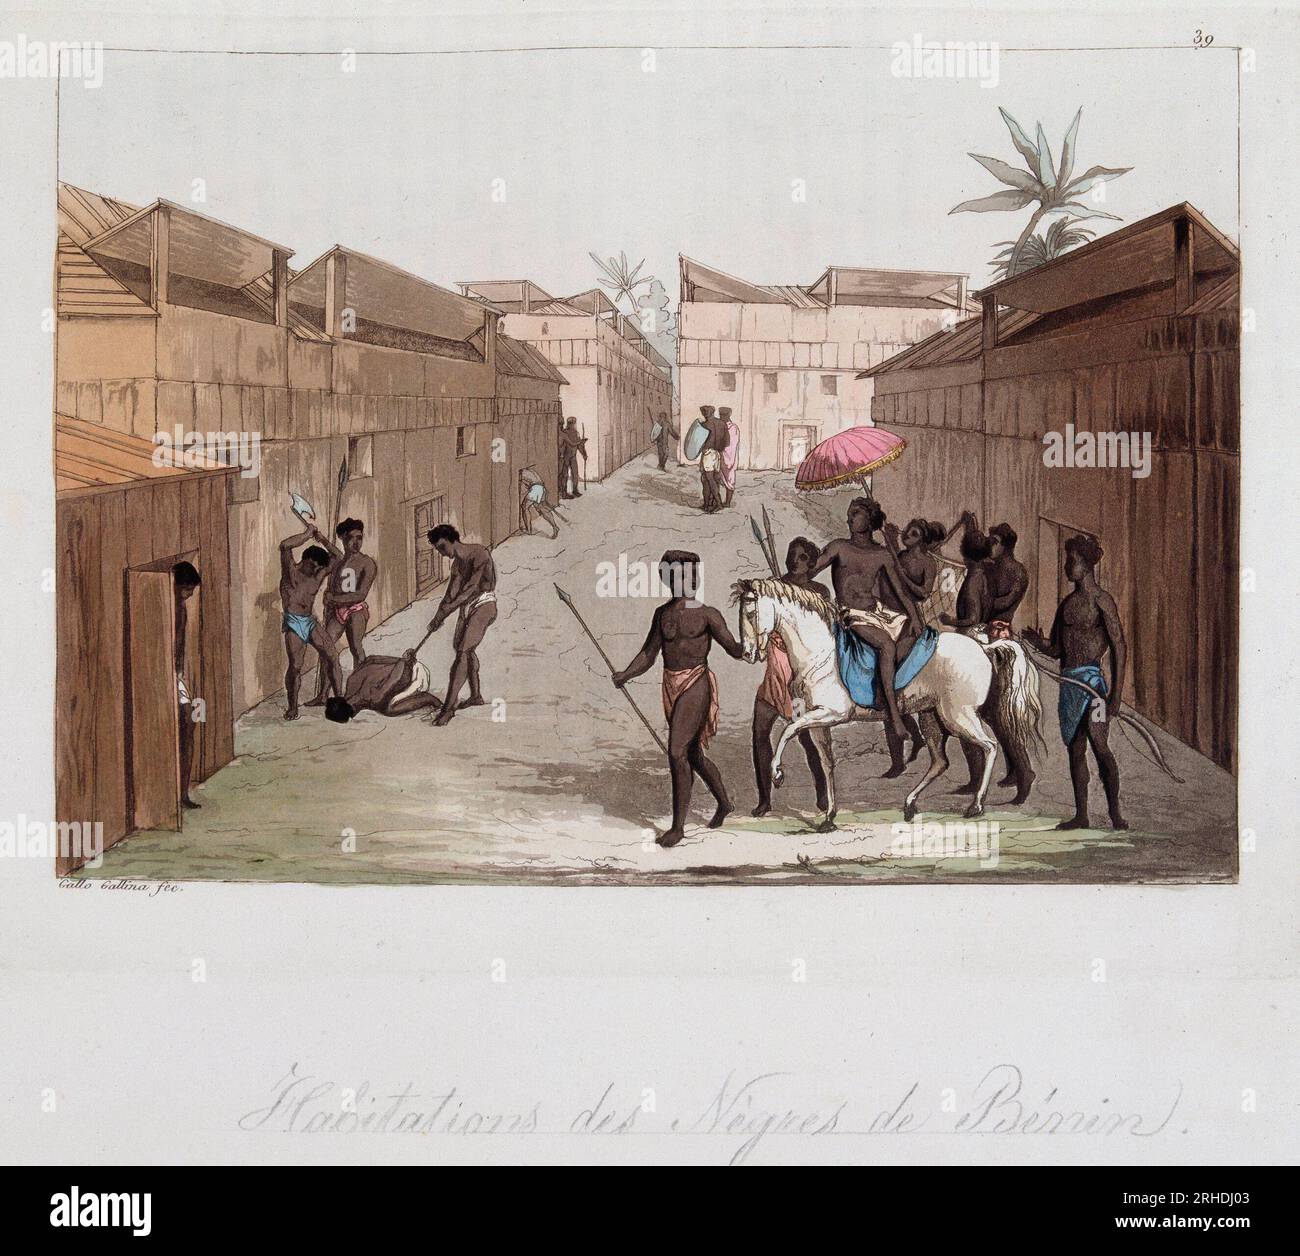 Habitation des negres du Benin (ancien Dahomey) (scene de rue) - in 'Le costume ancien et moderne' par Ferrario,  1819-20 Stock Photo